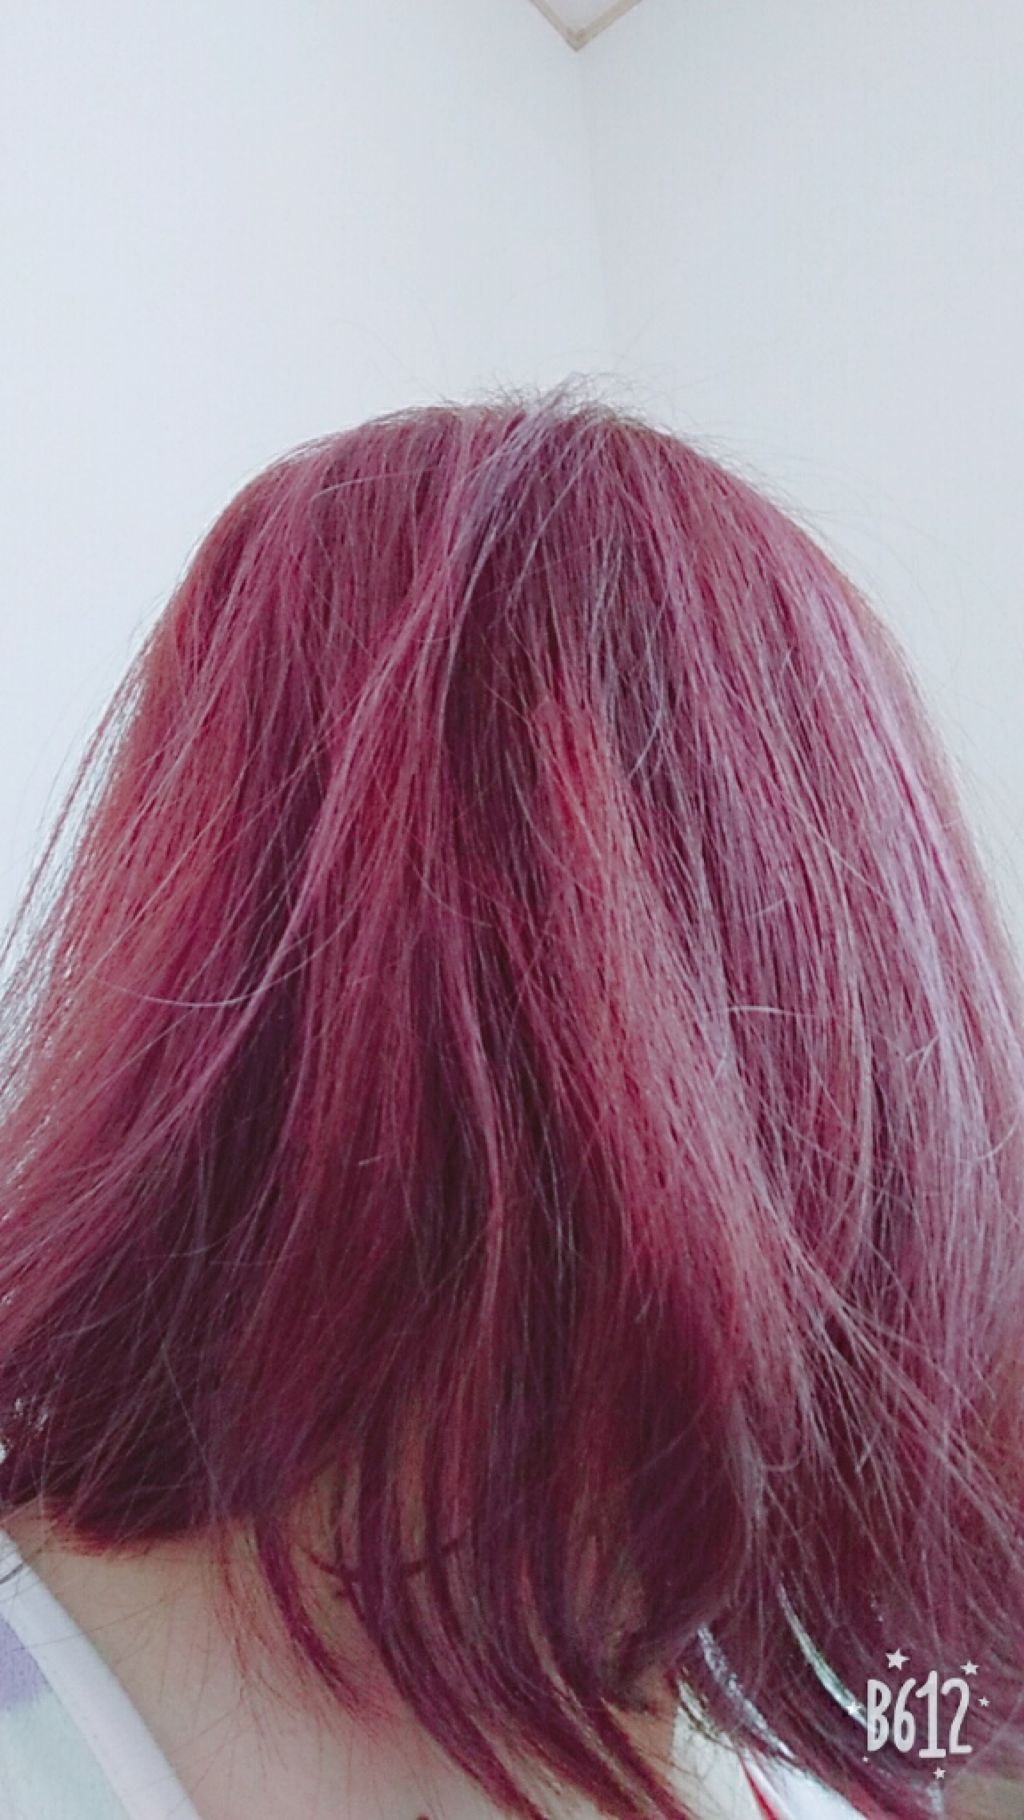 アレス カラー ピンクシャンプー ピンクトリートメント アレスカラーの口コミ 今 髪の毛の色が 赤プラスピンクプラス所々 By Asami Lips